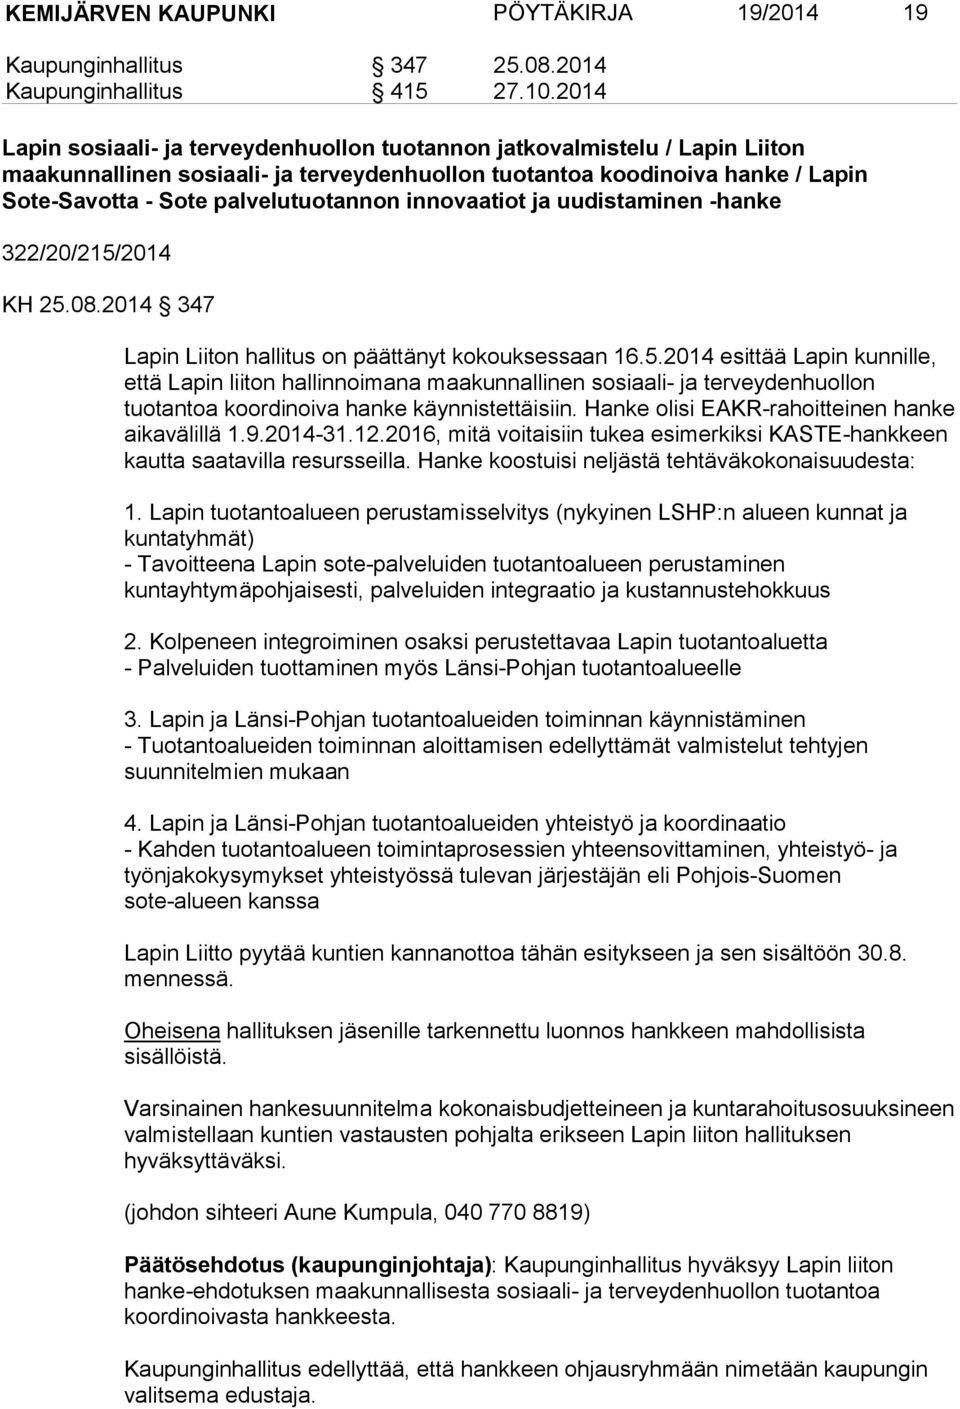 innovaatiot ja uudistaminen -hanke 322/20/215/2014 KH 25.08.2014 347 Lapin Liiton hallitus on päättänyt kokouksessaan 16.5.2014 esittää Lapin kunnille, että Lapin liiton hallinnoimana maakunnallinen sosiaali- ja terveydenhuollon tuotantoa koordinoiva hanke käynnistettäisiin.